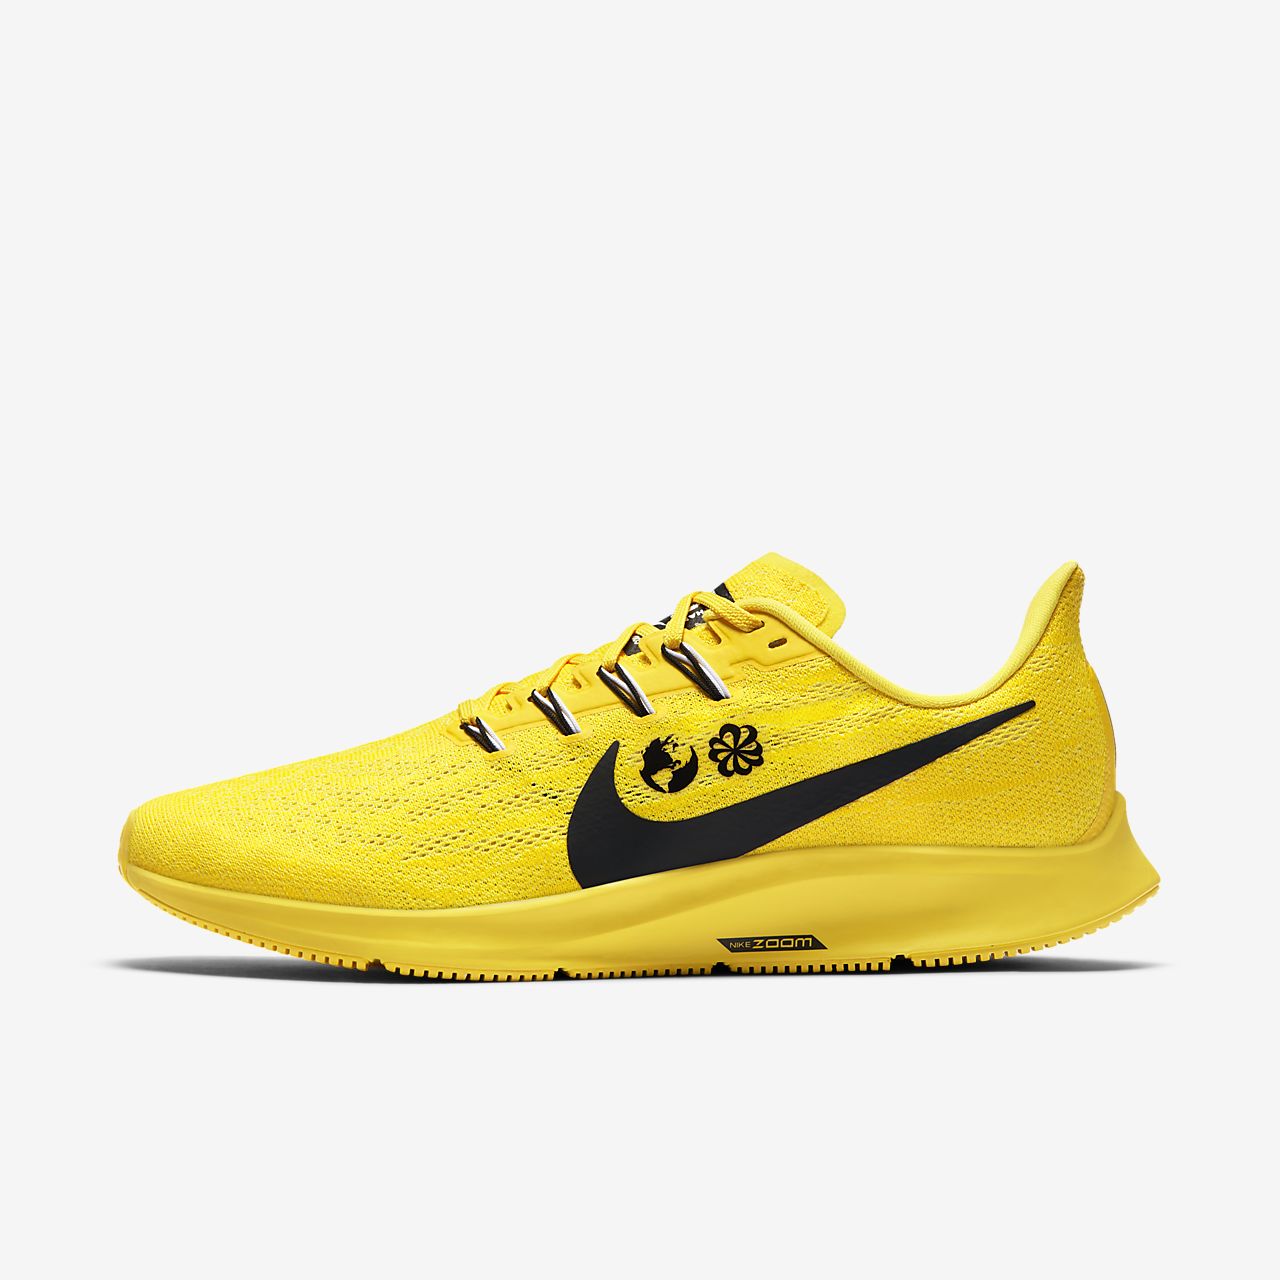 nike pegasus 36 amarillas - Tienda Online de Zapatos, Ropa y Complementos  de marca